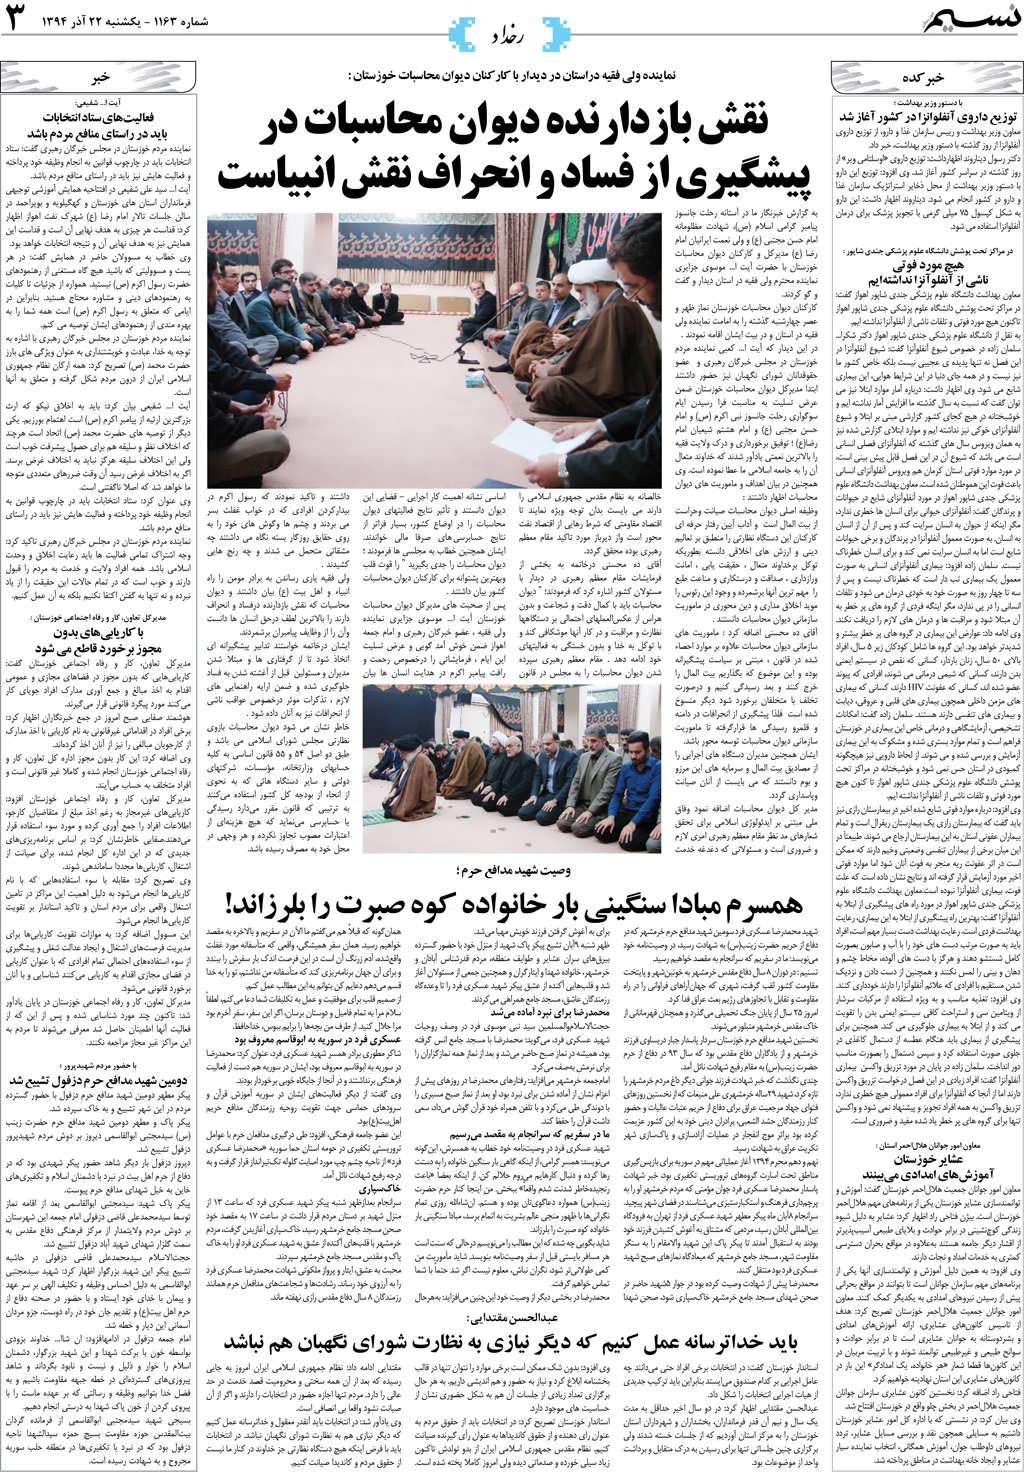 صفحه رخداد روزنامه نسیم شماره 1163